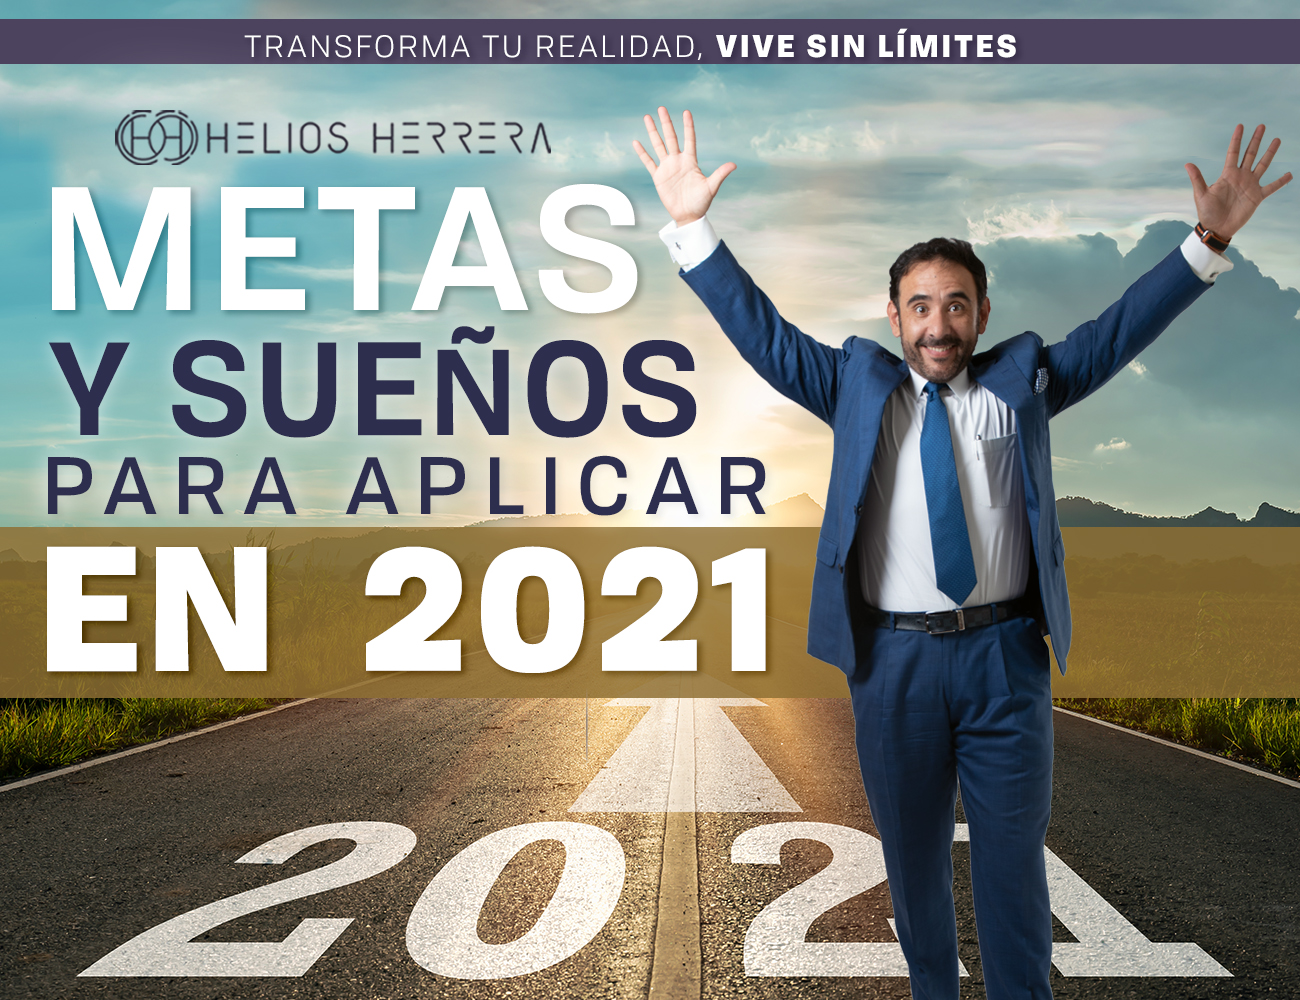 Metas y sueños para aplicar en 2021